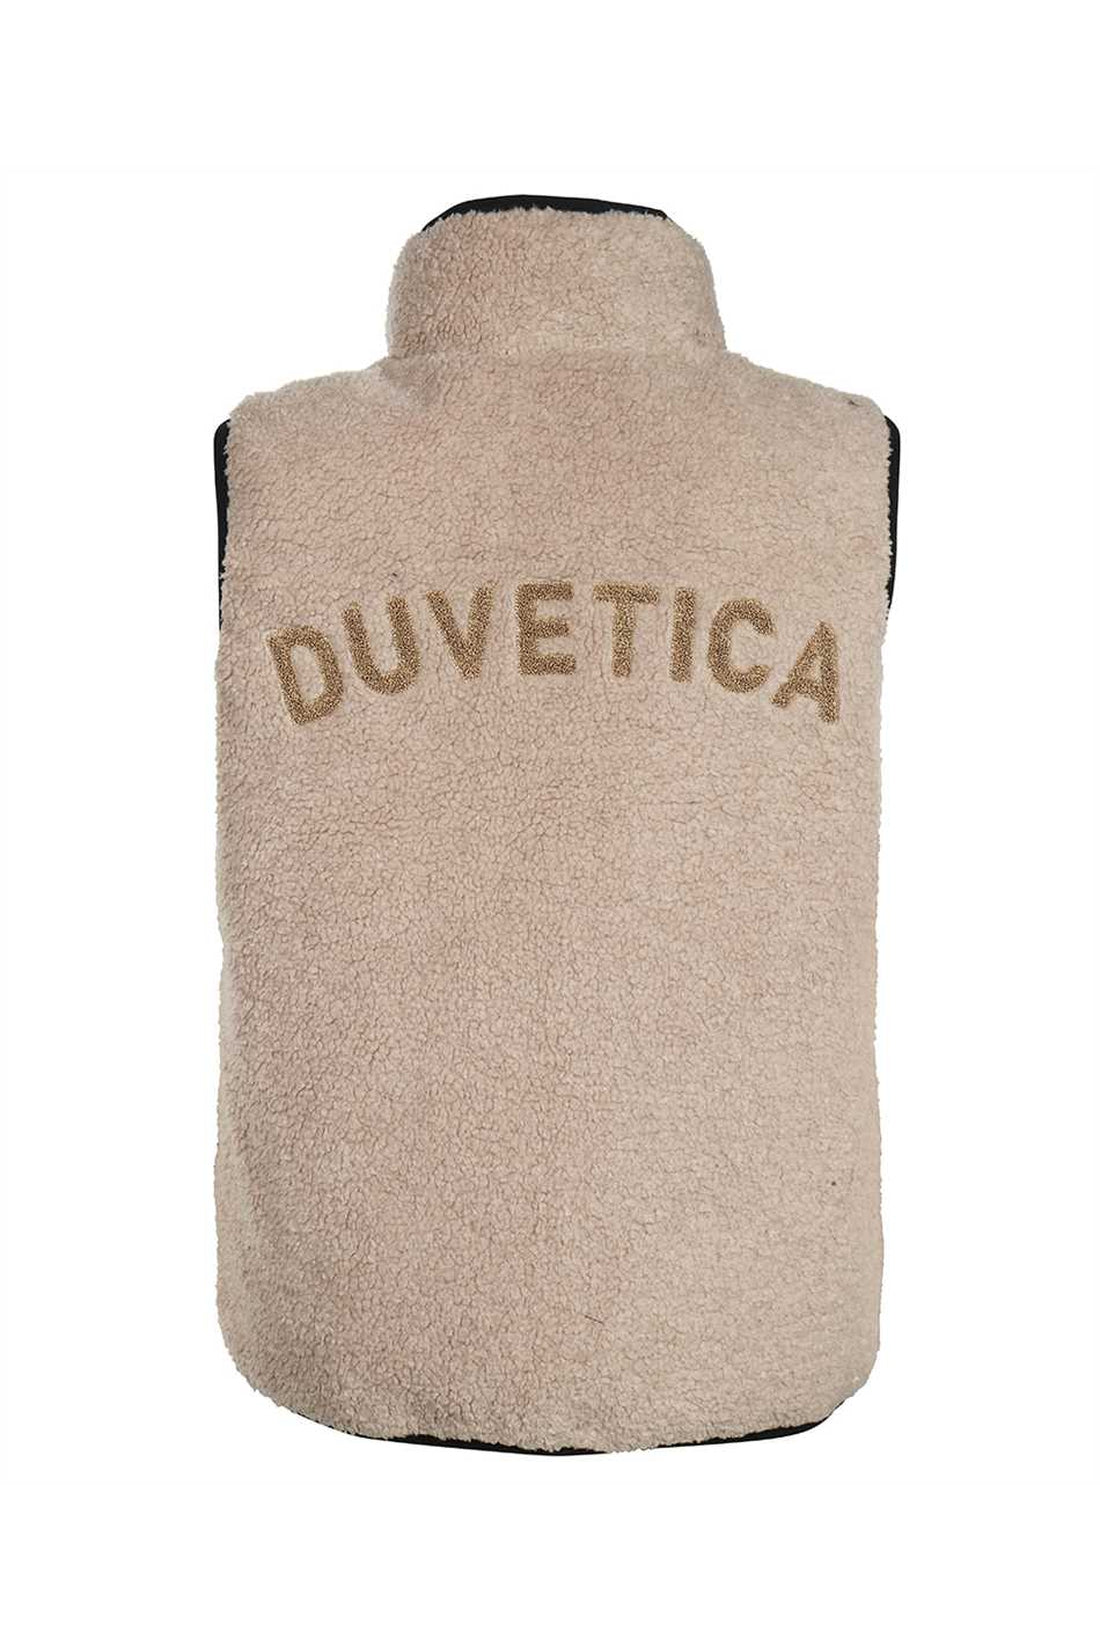 Duvetica-OUTLET-SALE-Algorab full zip field vest-ARCHIVIST